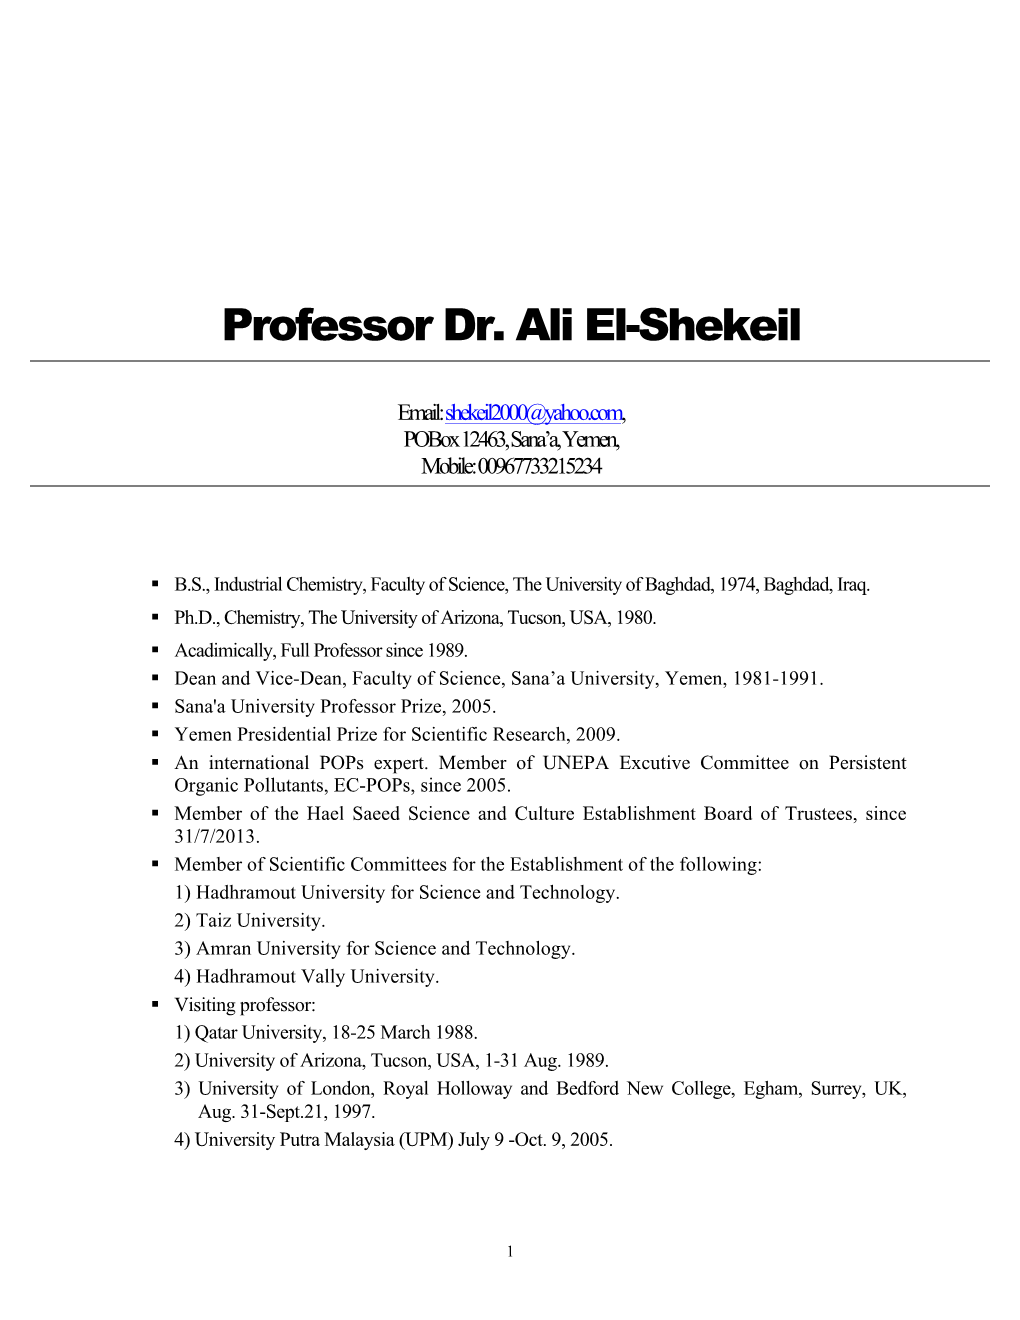 Professor Dr. Ali El-Shekeil